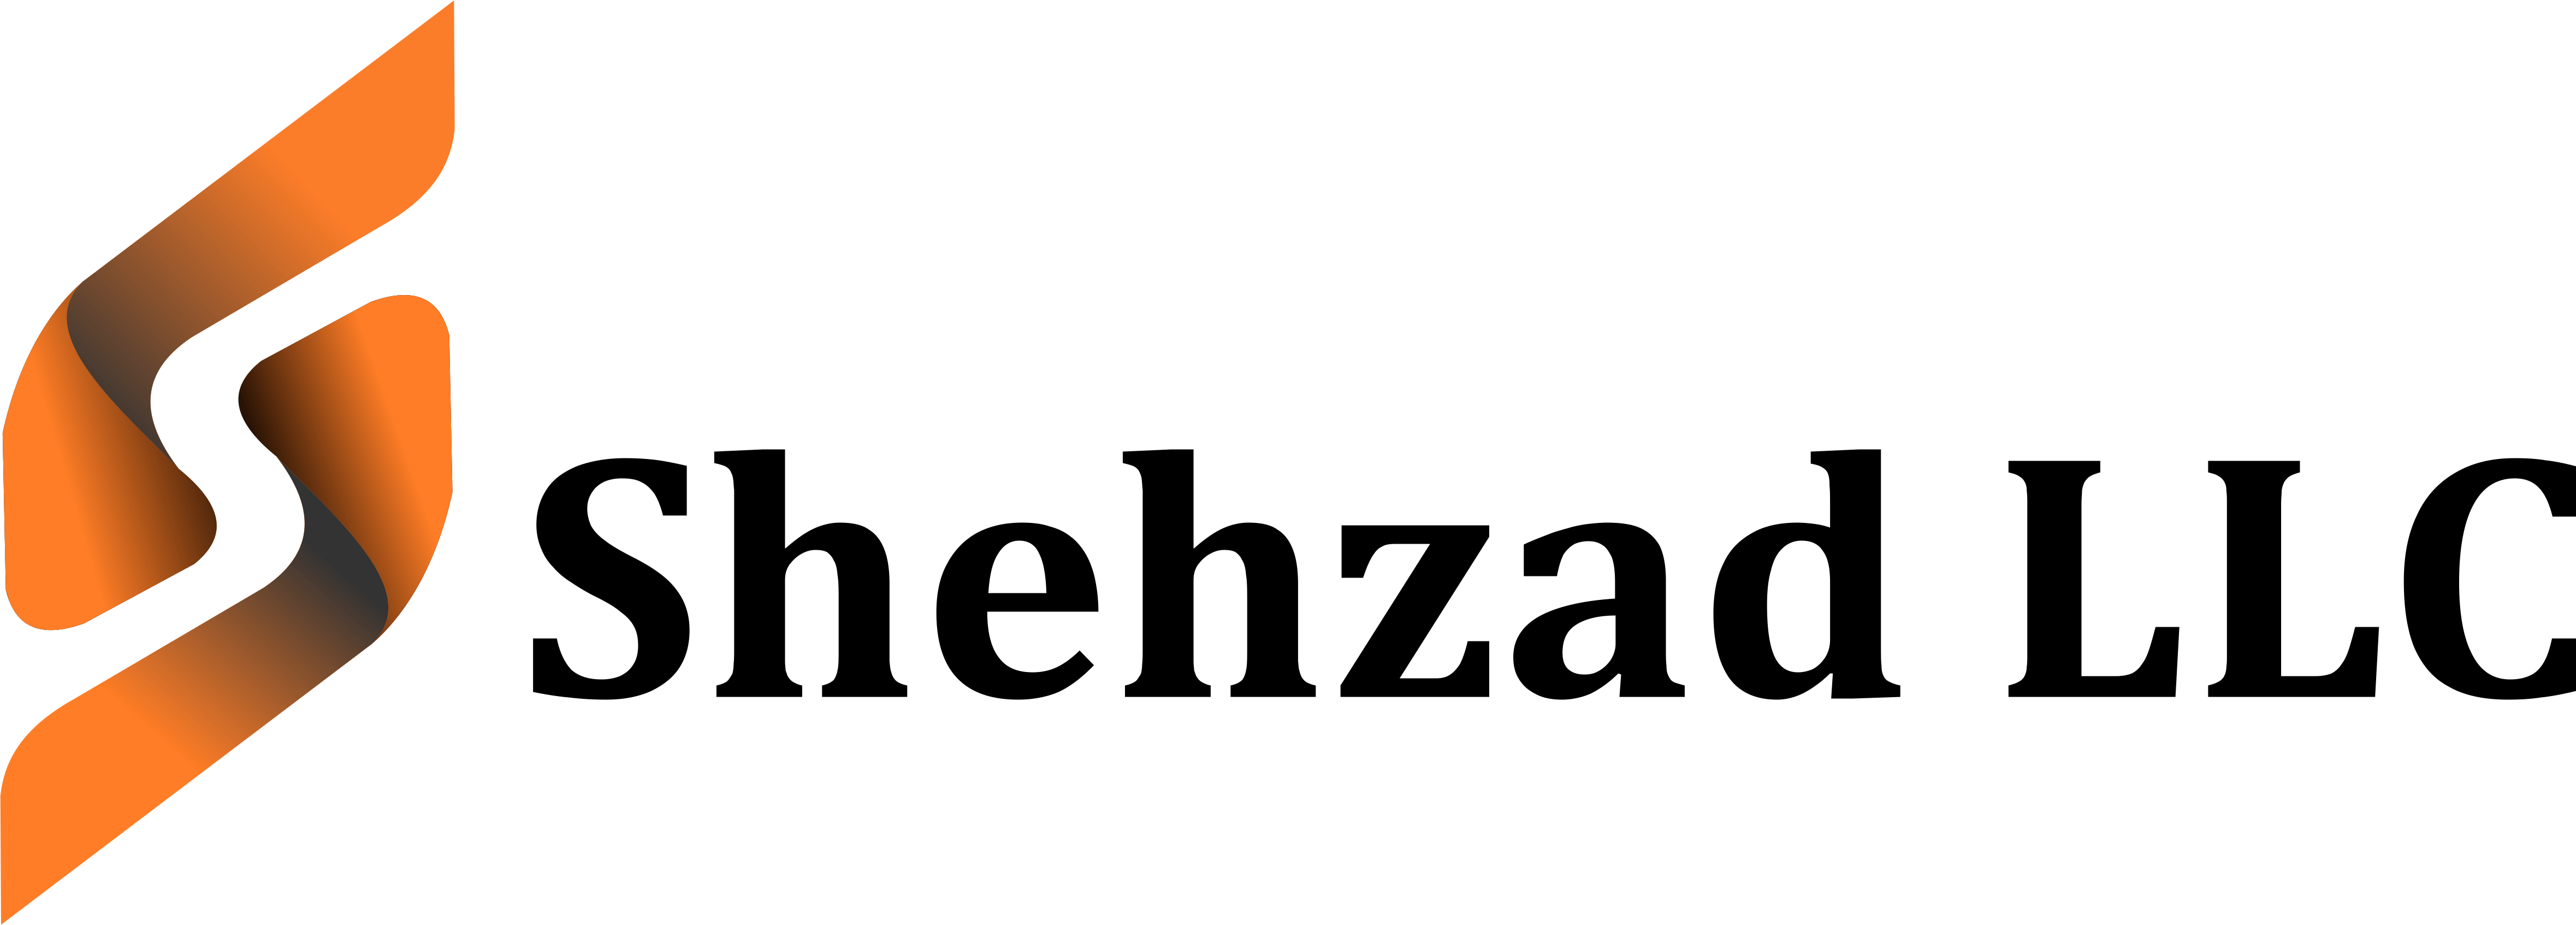 Shehzad LLC | Ecommerce